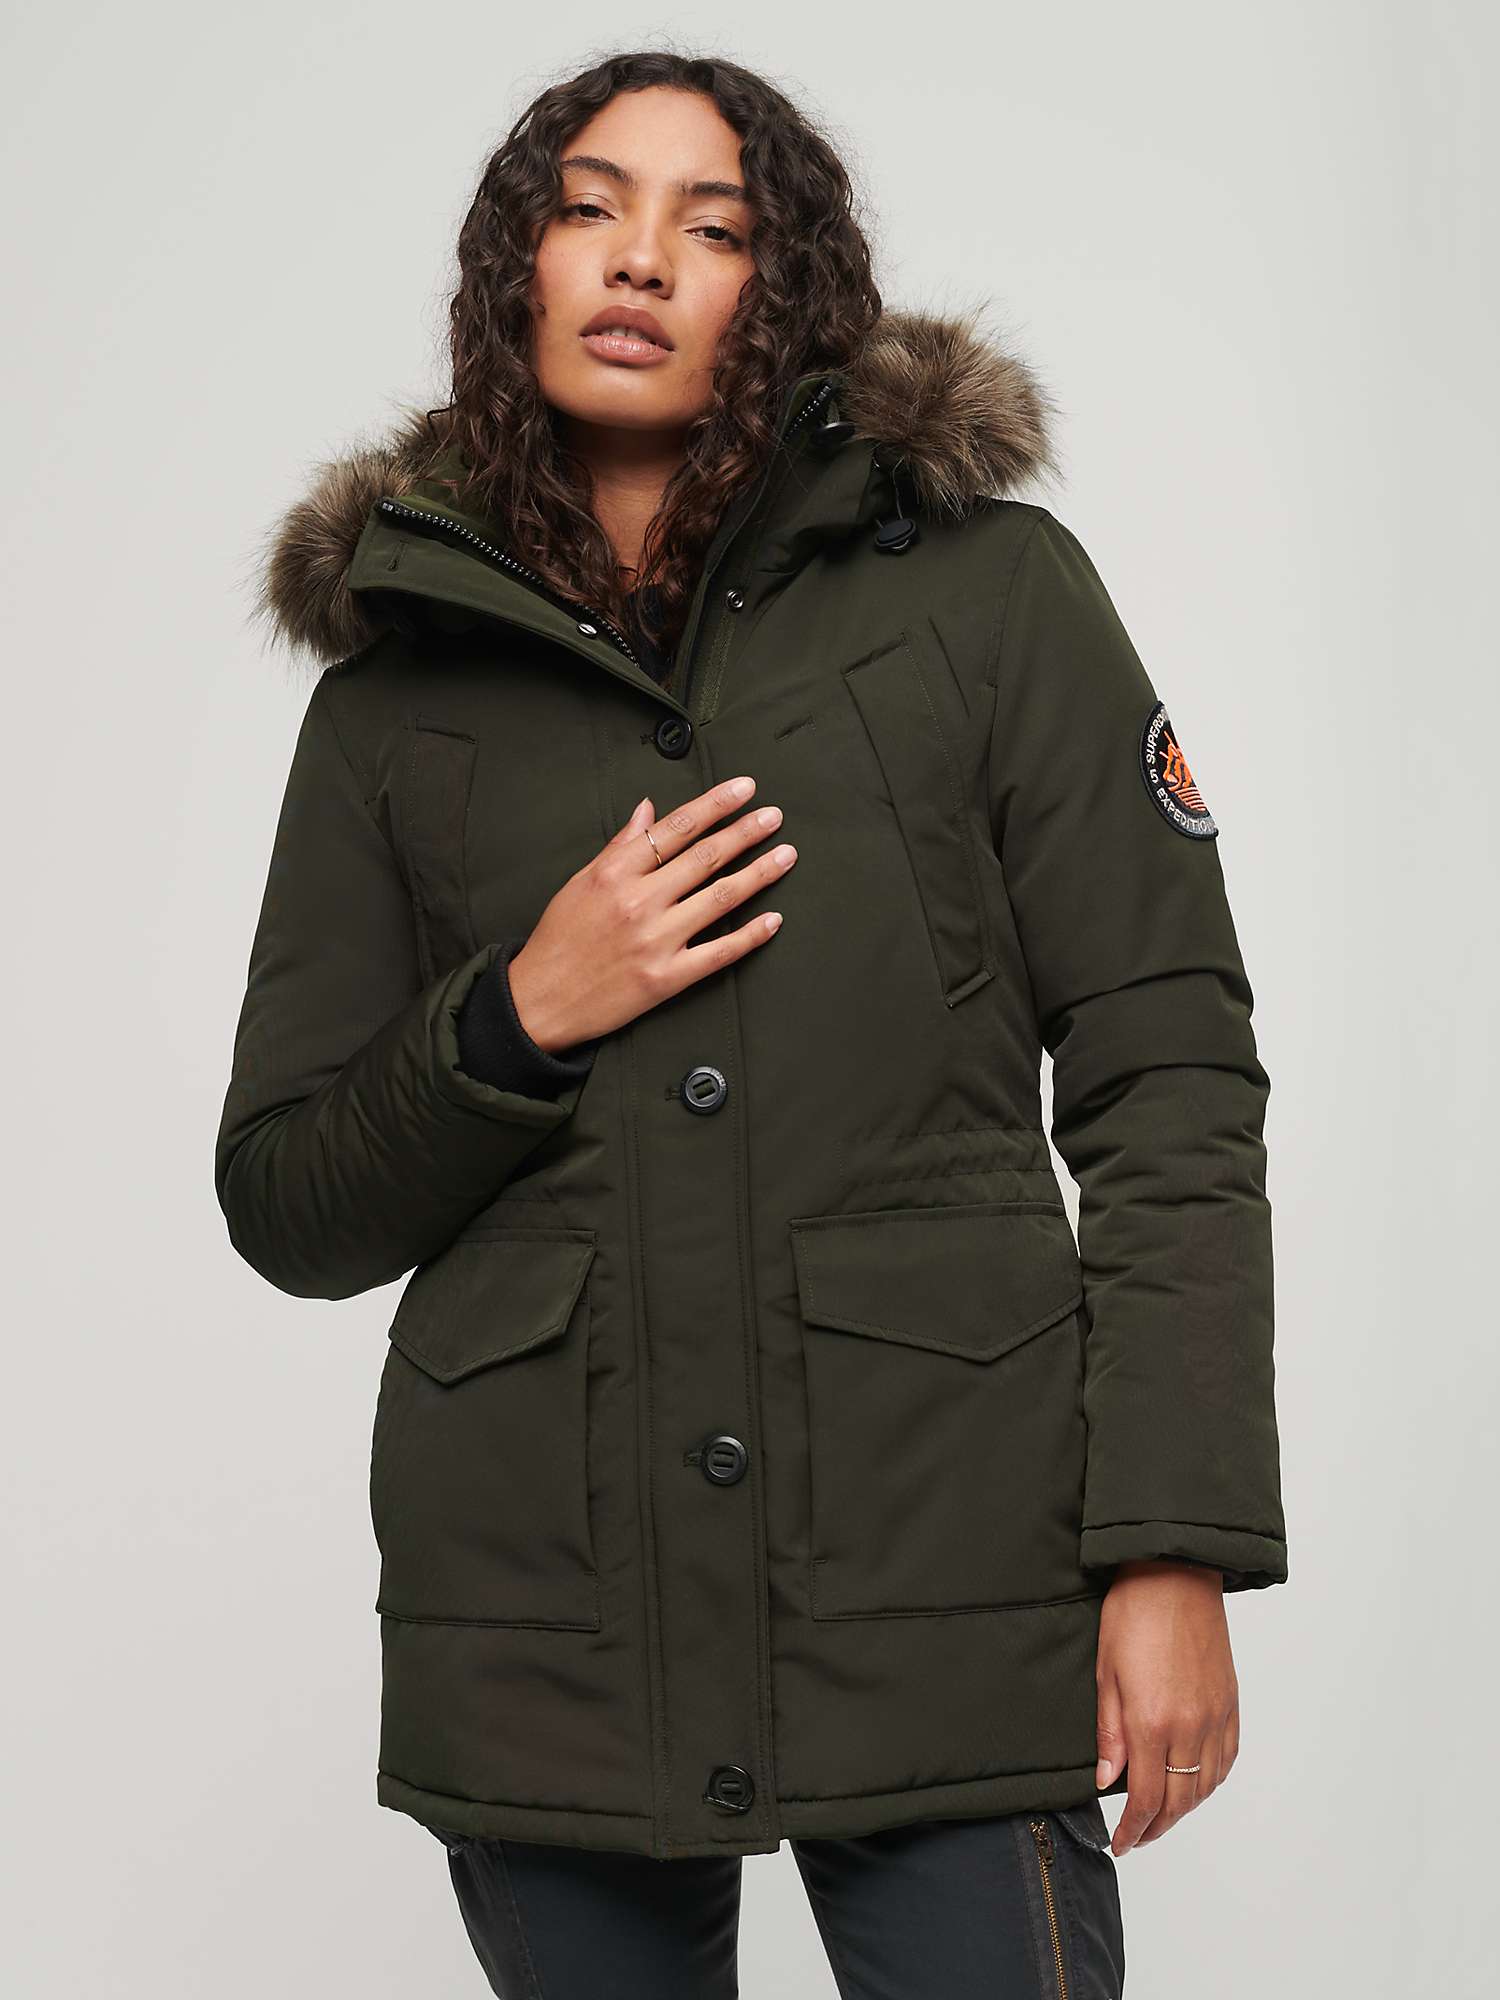 Buy Superdry Everest Faux Fur Hooded Parka Coat, Khaki Online at johnlewis.com